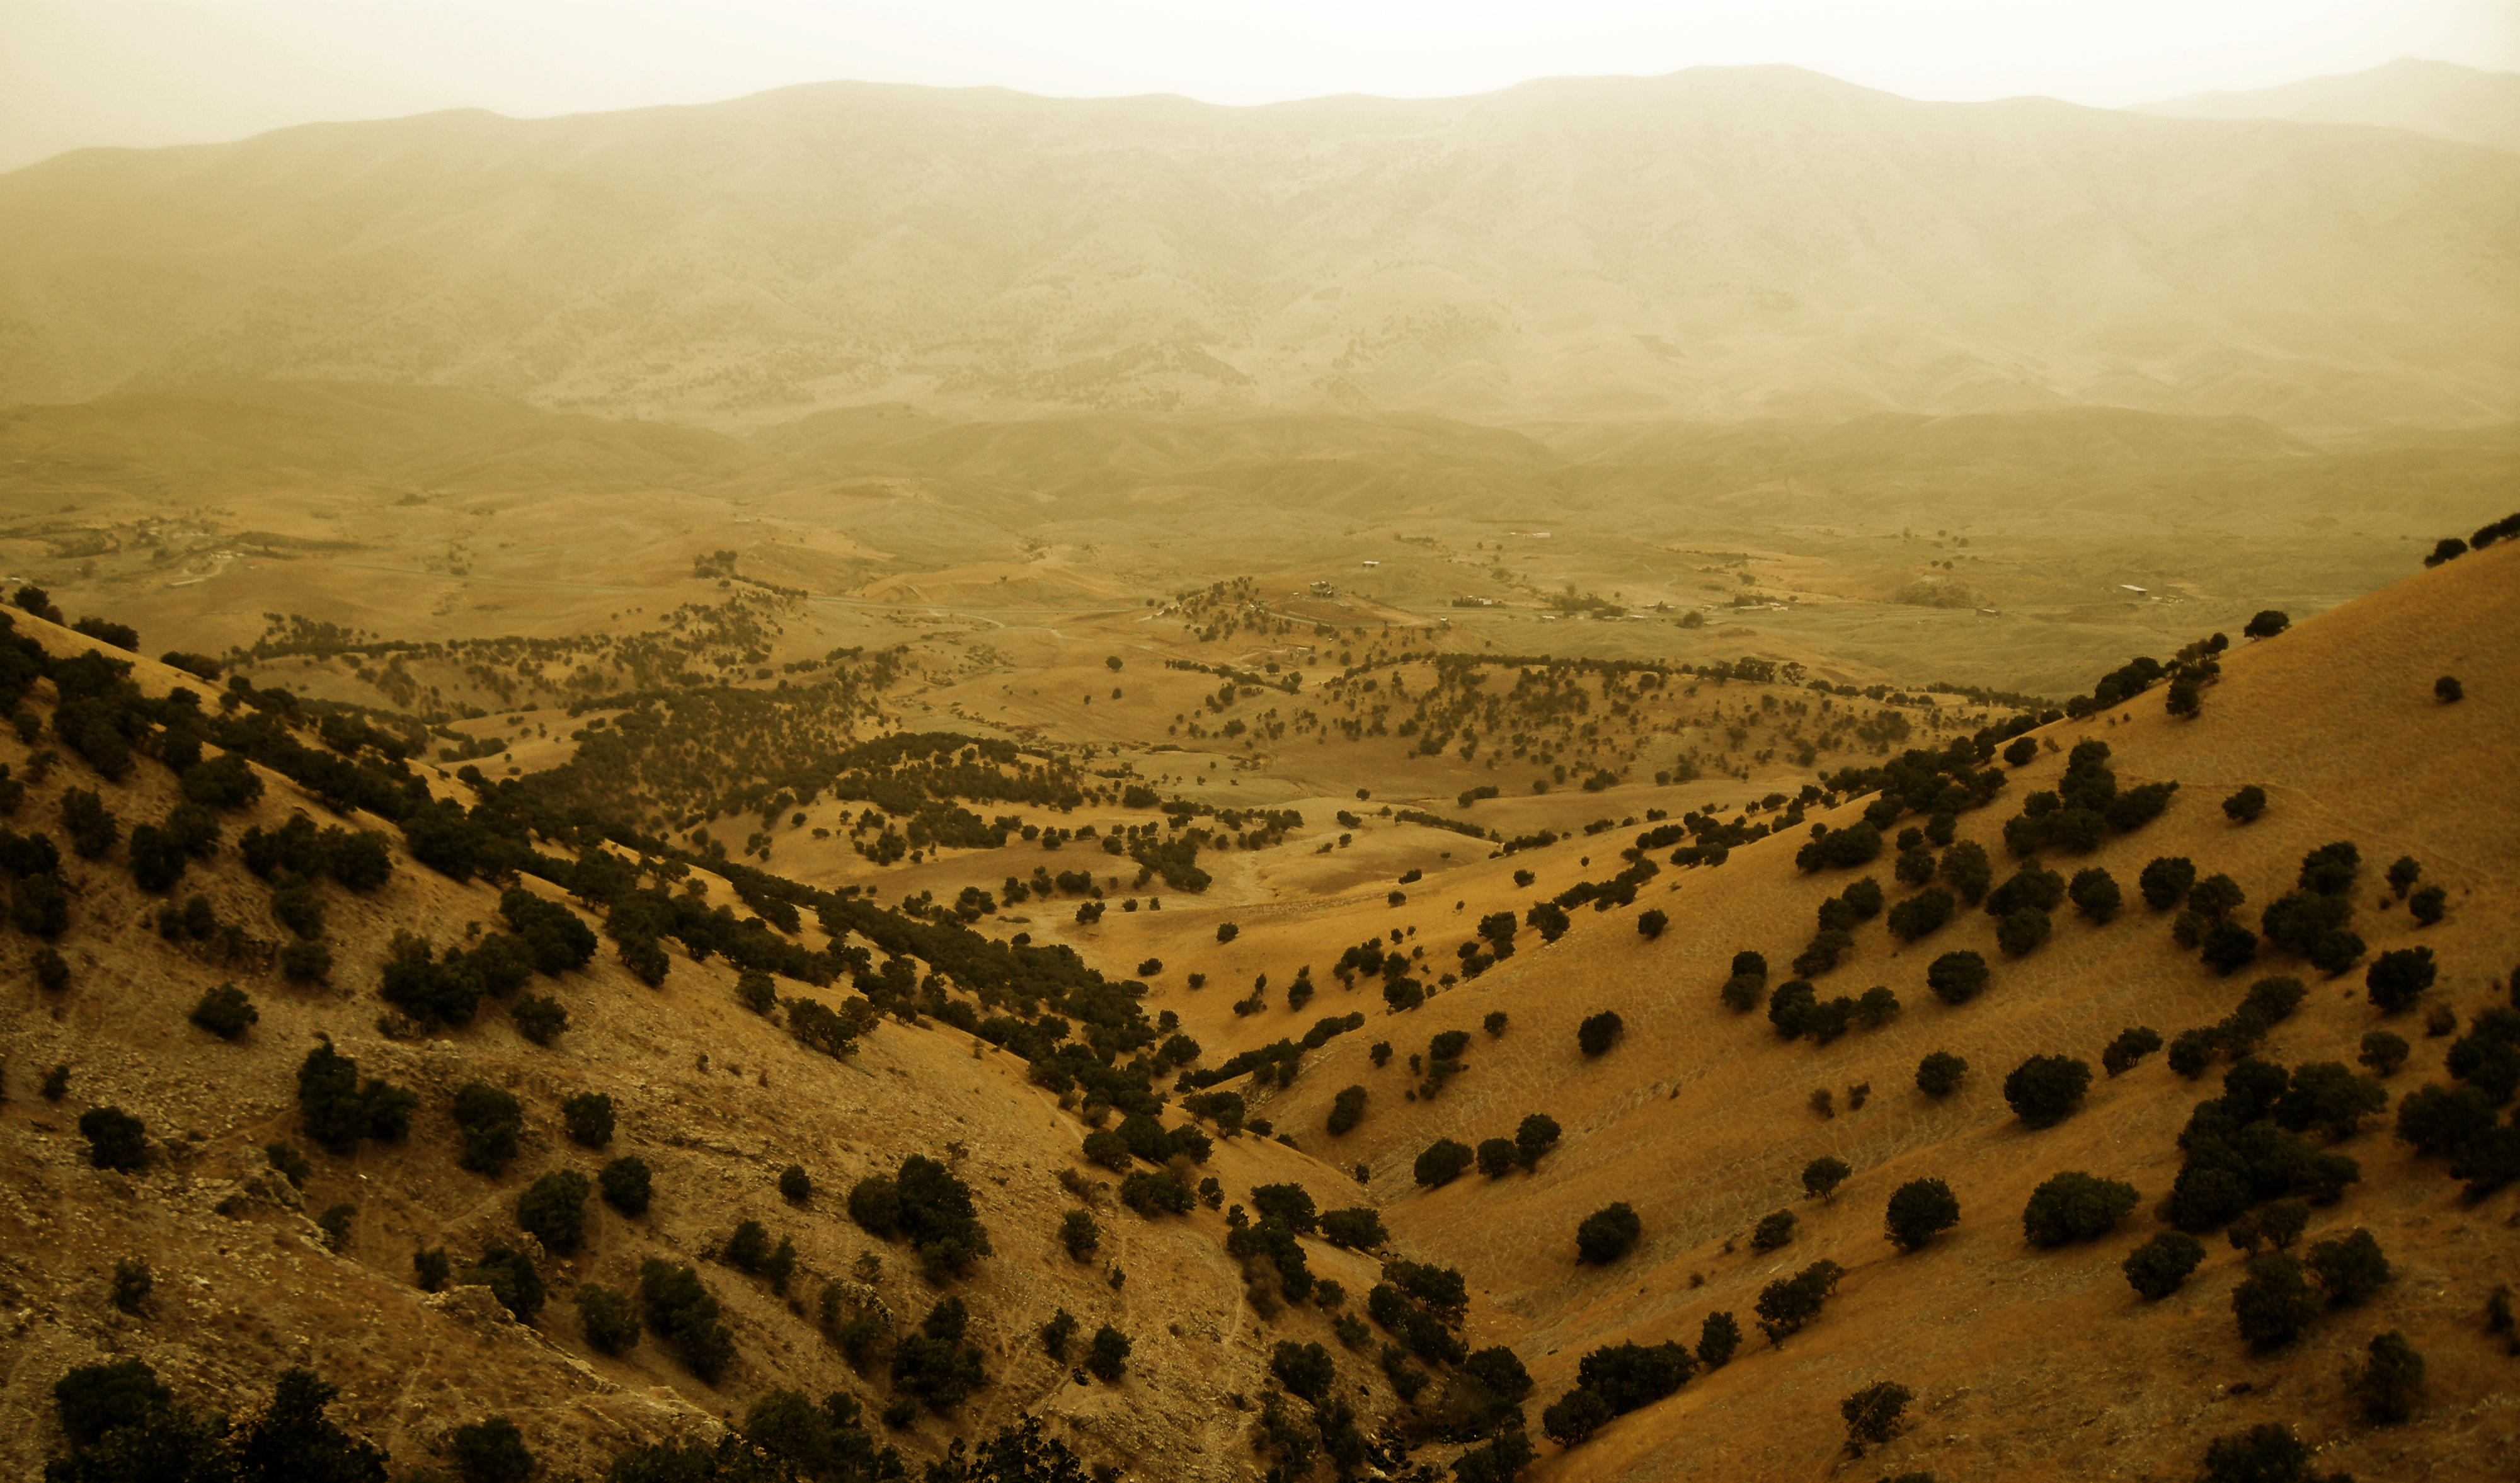 landscape_from_kurdistan___iraq_by_kperhonen-d5b808e.jpg